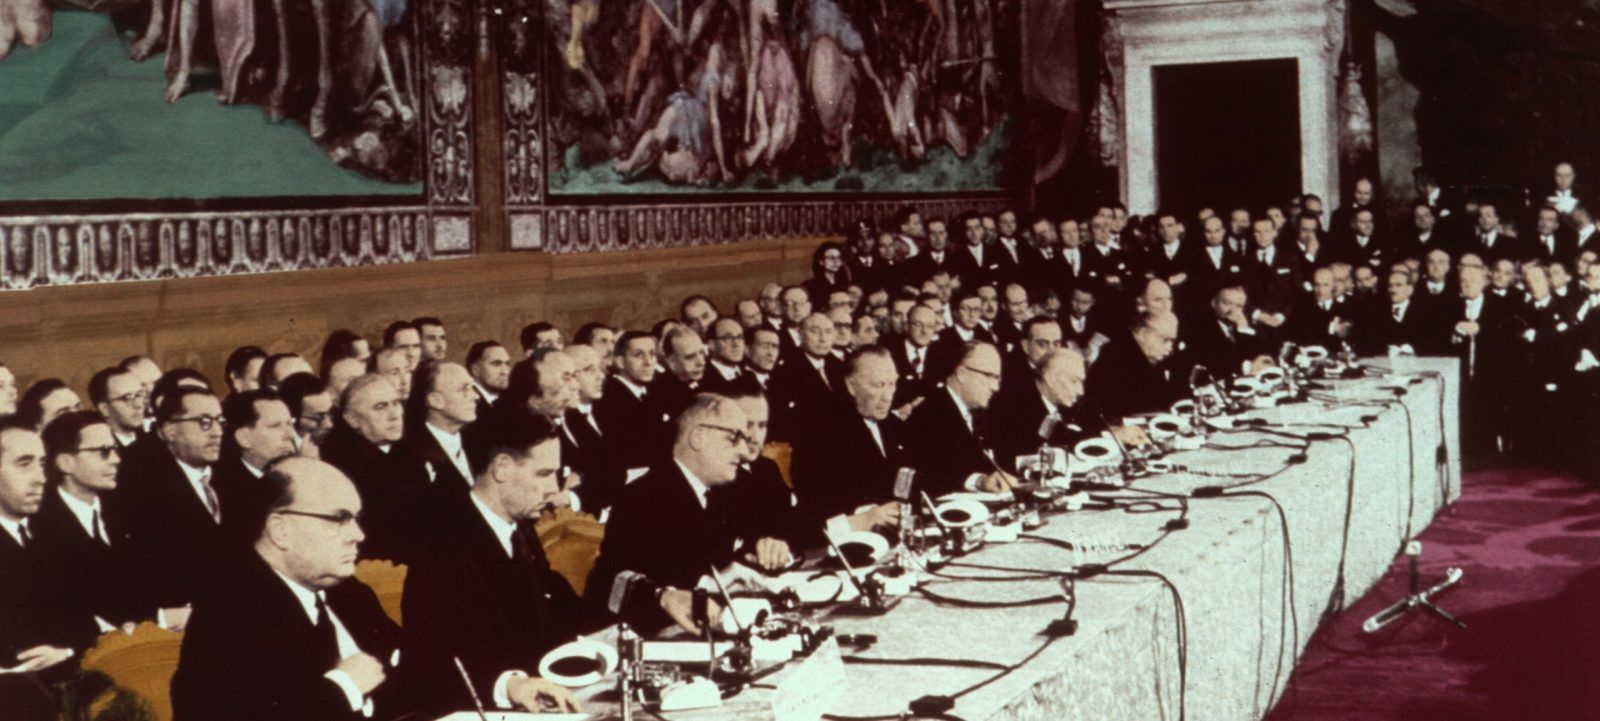 Процесс европейской интеграции был инициирован 9 мая 1950 года речью Роберта Шумана, министра иностранных дел Франции, предложившего объединить угольную и сталелитейную промышленность Франции и ФРГ.